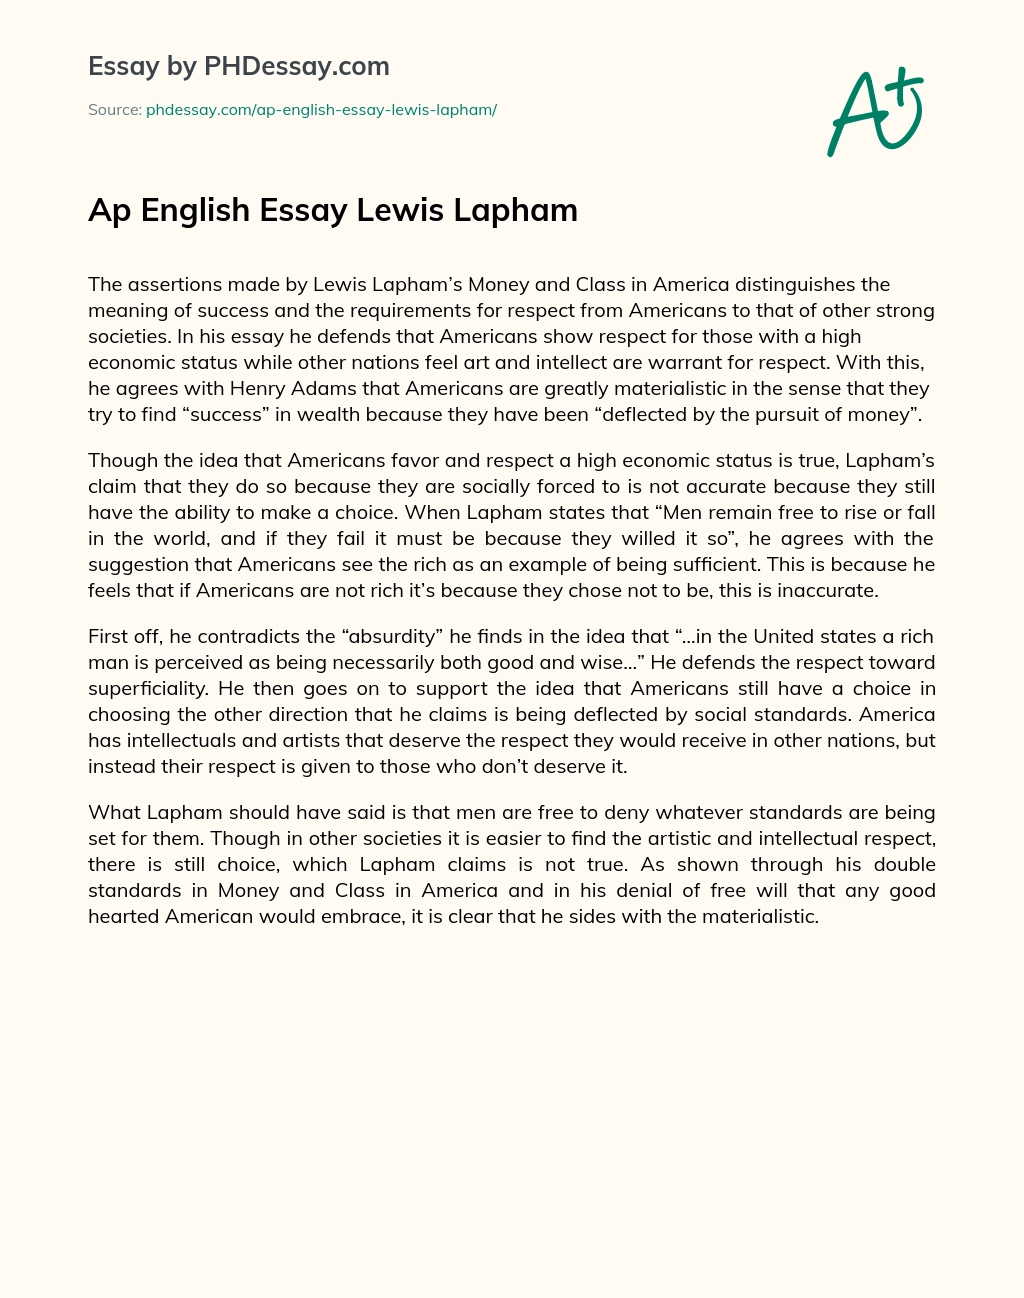 Ap English Essay Lewis Lapham essay